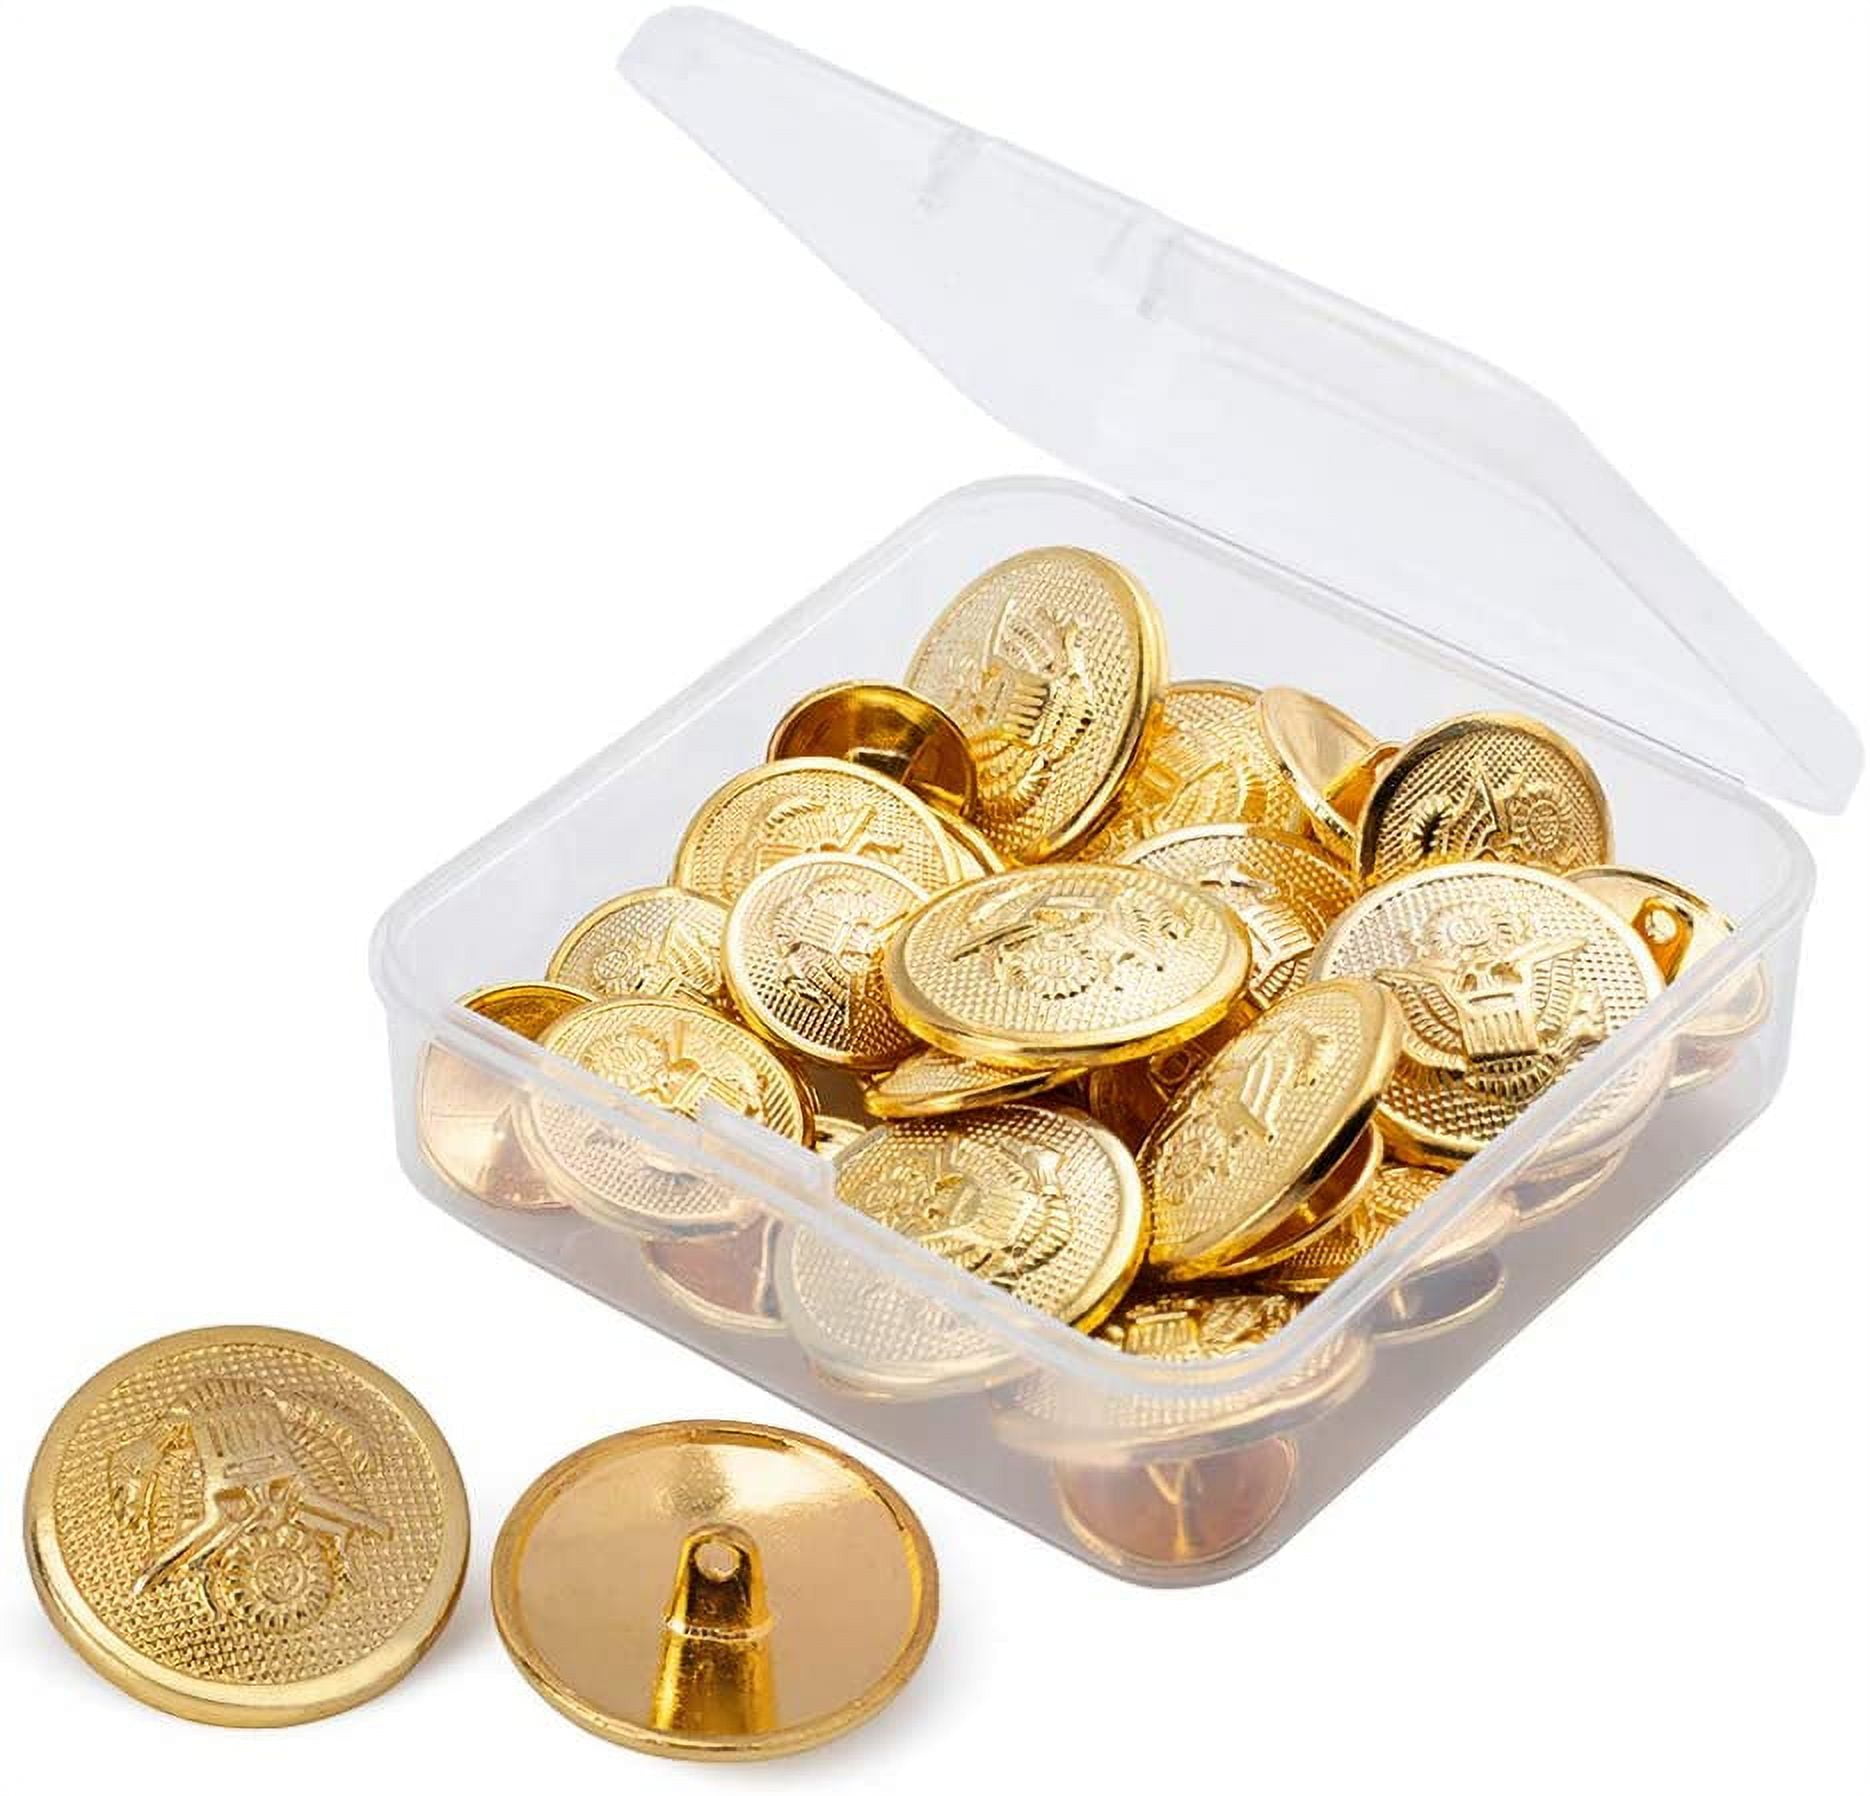 10 Count Buttons - Brass Metallic Gold Shank Dutch Costume Coat Buttons  M211.41